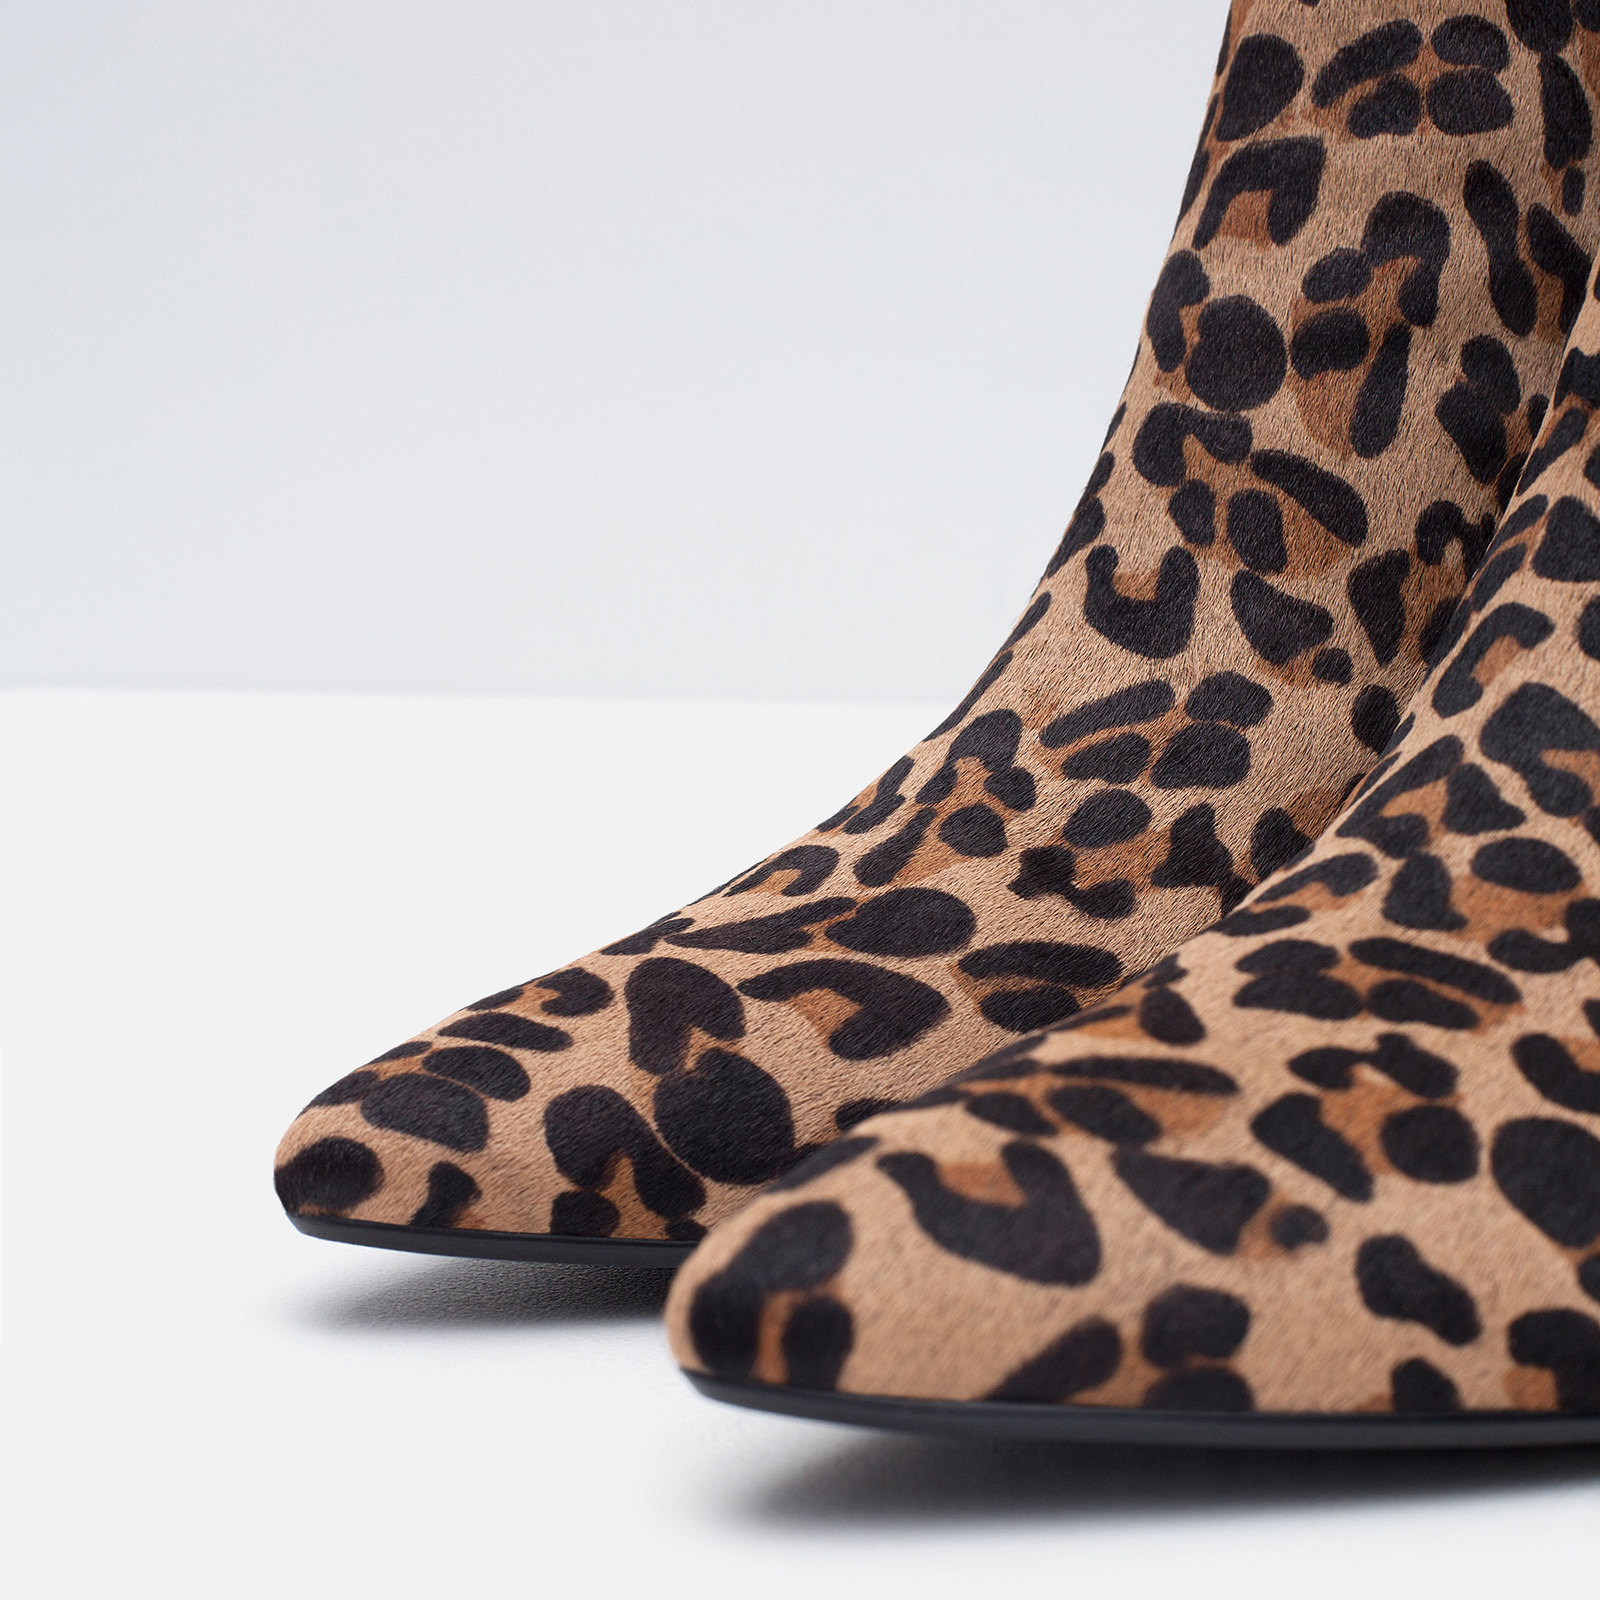 Zara magassarkú leopárdmintás bőr bokacsizma 2015.10.15 fotója